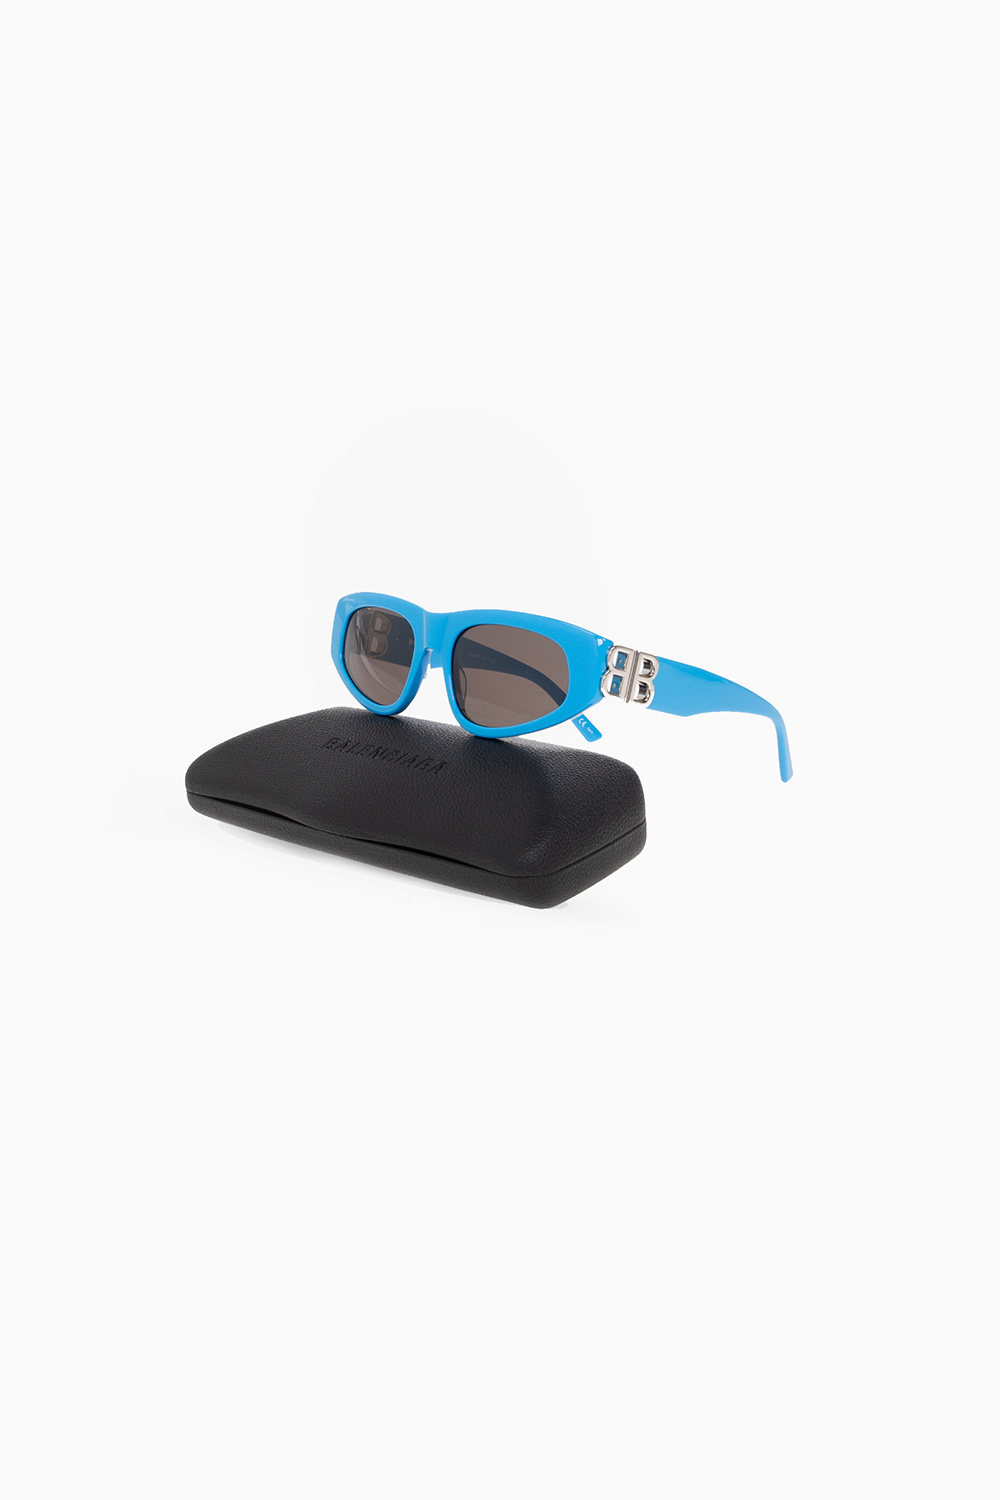 Balenciaga ‘Dynasty D-Frame’ MISSB1U sunglasses